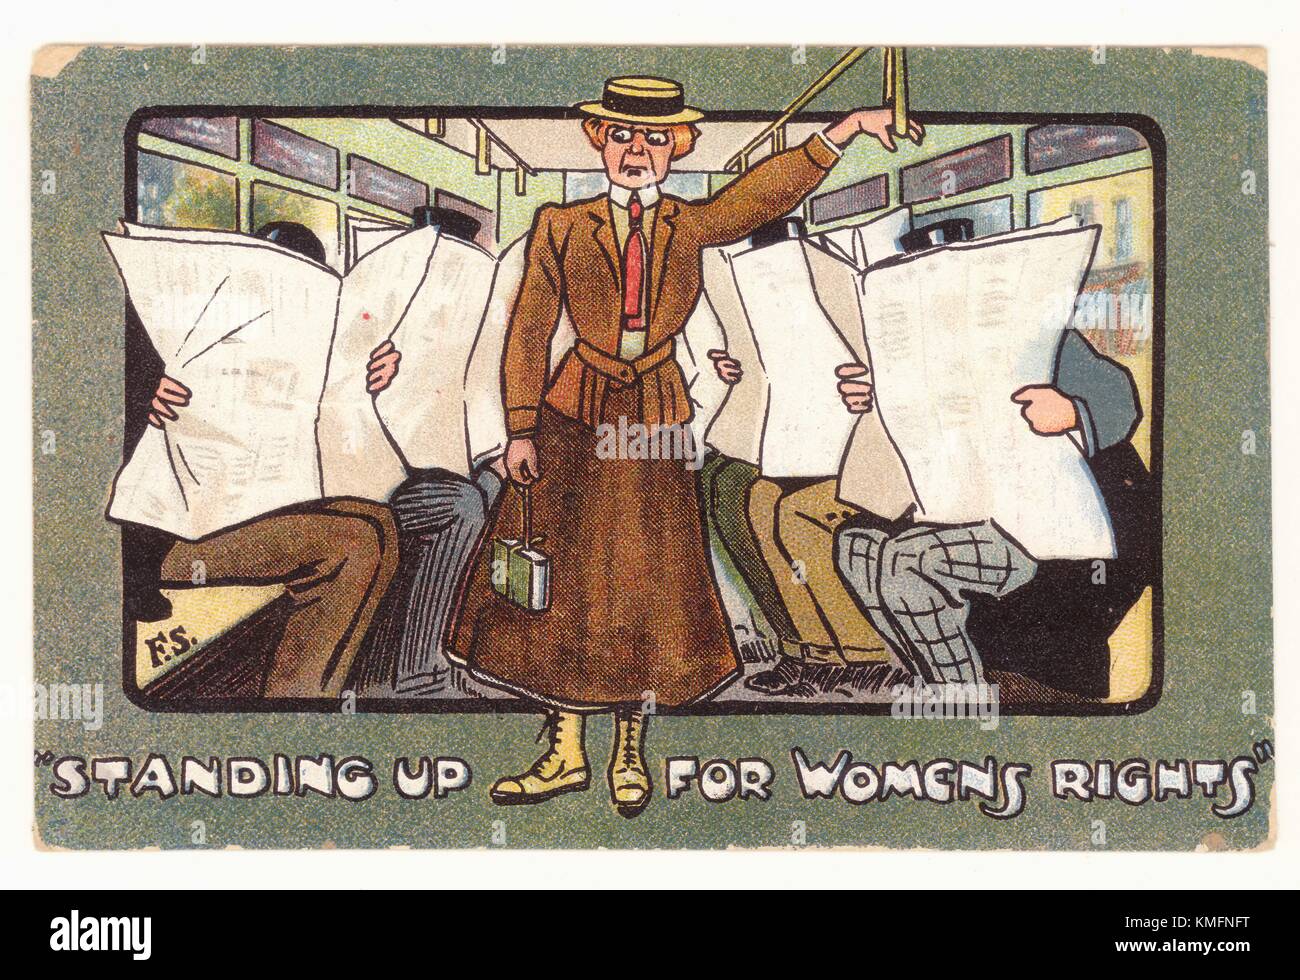 Carte postale originale de la propagande de l'époque édouardienne (thème de la suffragette) - défendre les droits des femmes - carte anti-suffragette, représentant typiquement la femme de campagne comme étant peu attrayante et dowdy, et pas digne des hommes abandonnant leur siège pour elle. ROYAUME-UNI 1907. Banque D'Images